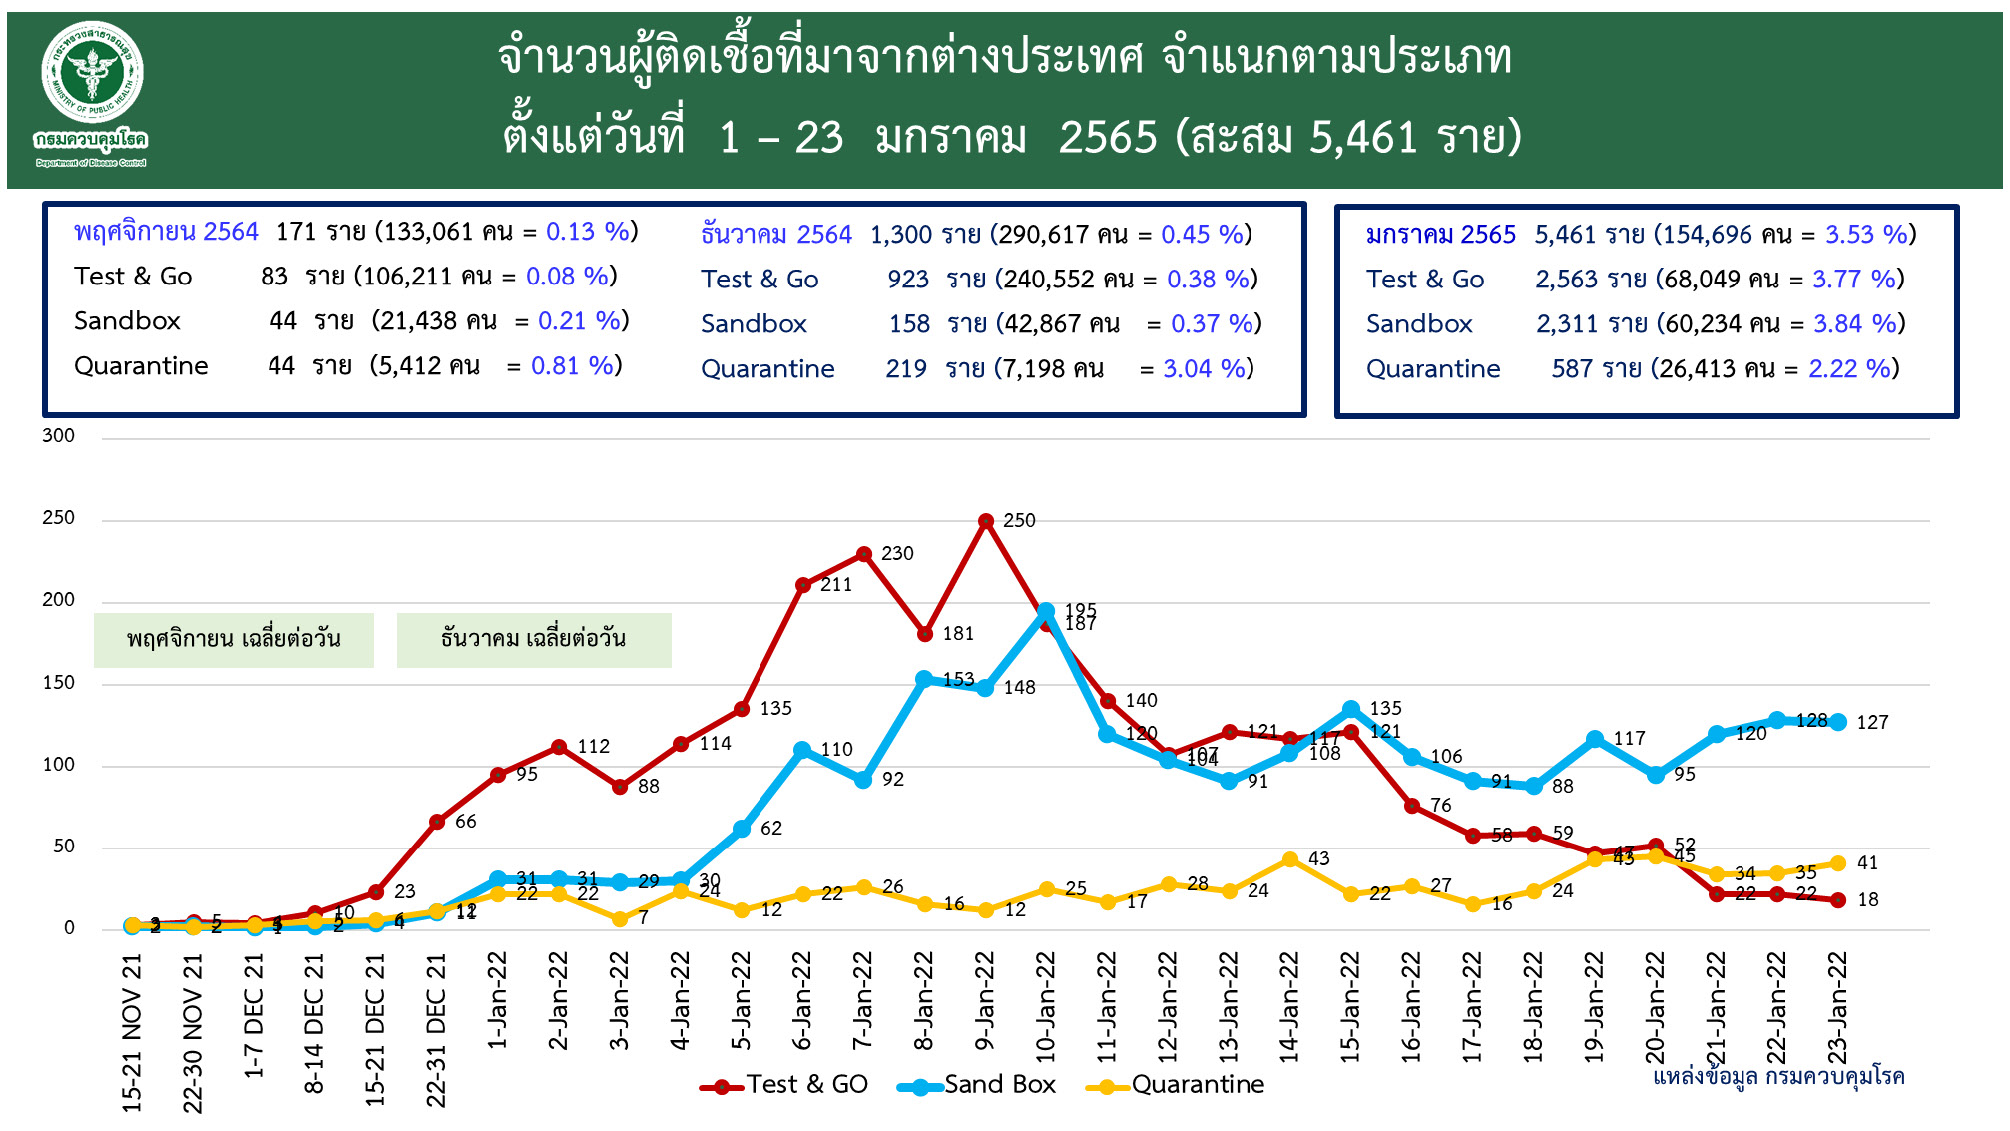 www.thaiguide.dk/images/forum/covid19/ankomster%20og%20smittede%20over%20tid%2023-01-22.jpg